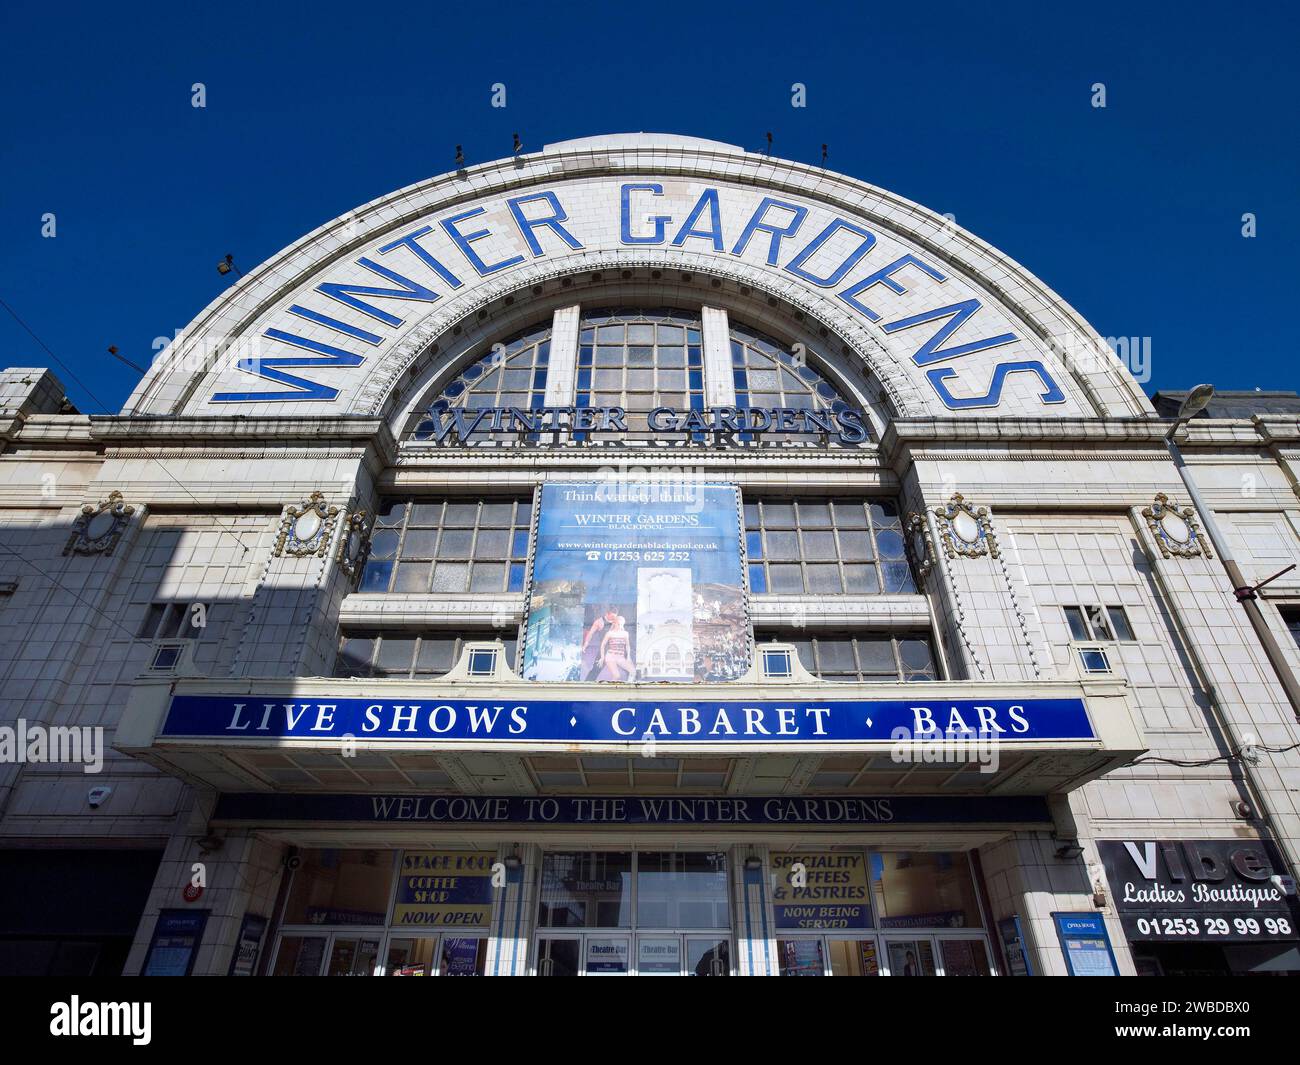 La facciata esterna dei famosi Winter Gardens, Blackpool, Inghilterra nord-occidentale, Regno Unito Foto Stock